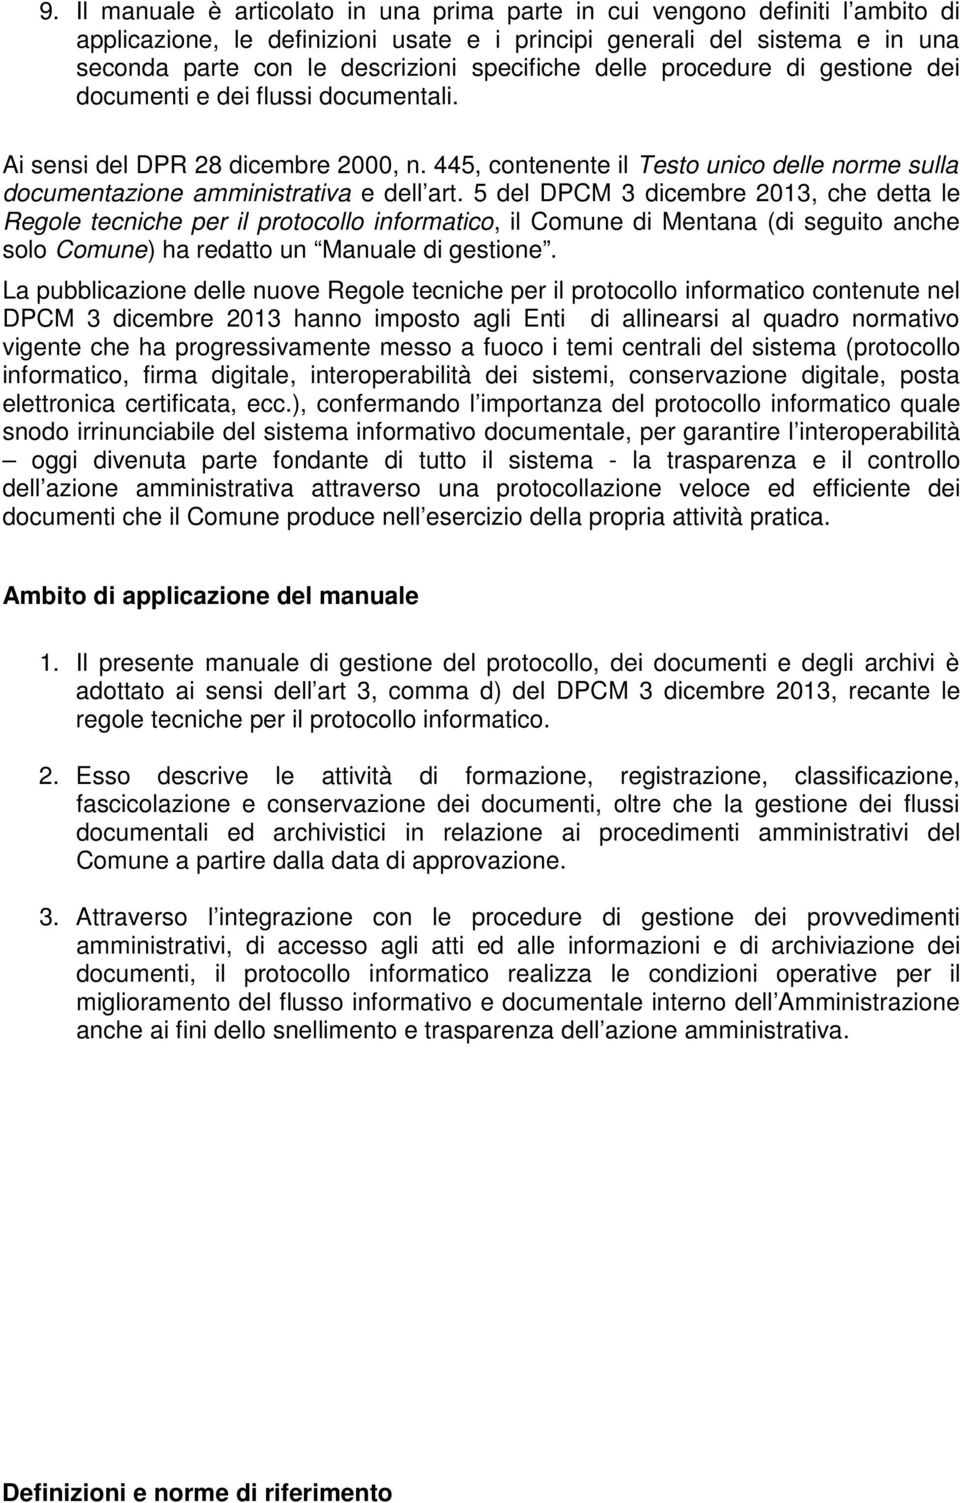 445, contenente il Testo unico delle norme sulla documentazione amministrativa e dell art.